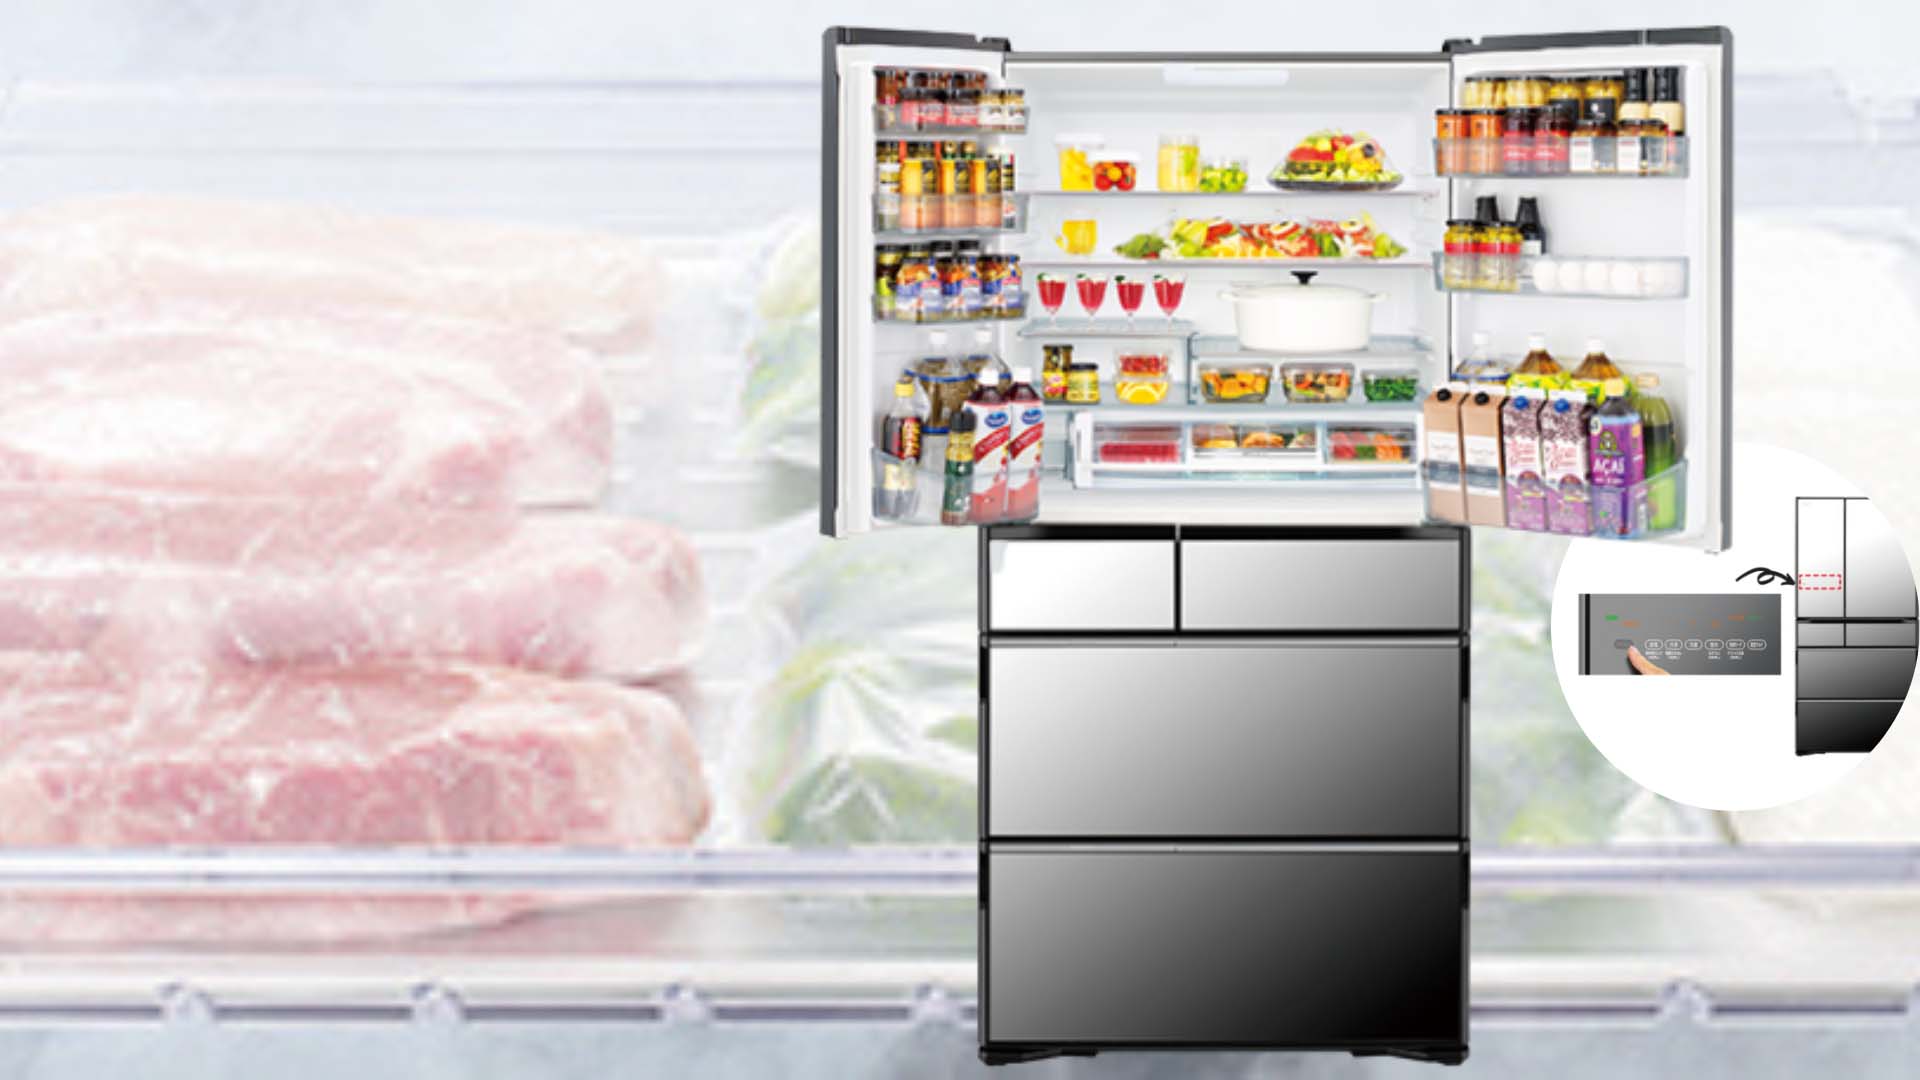 Tủ lạnh Hitachi R-WXC74S 735L